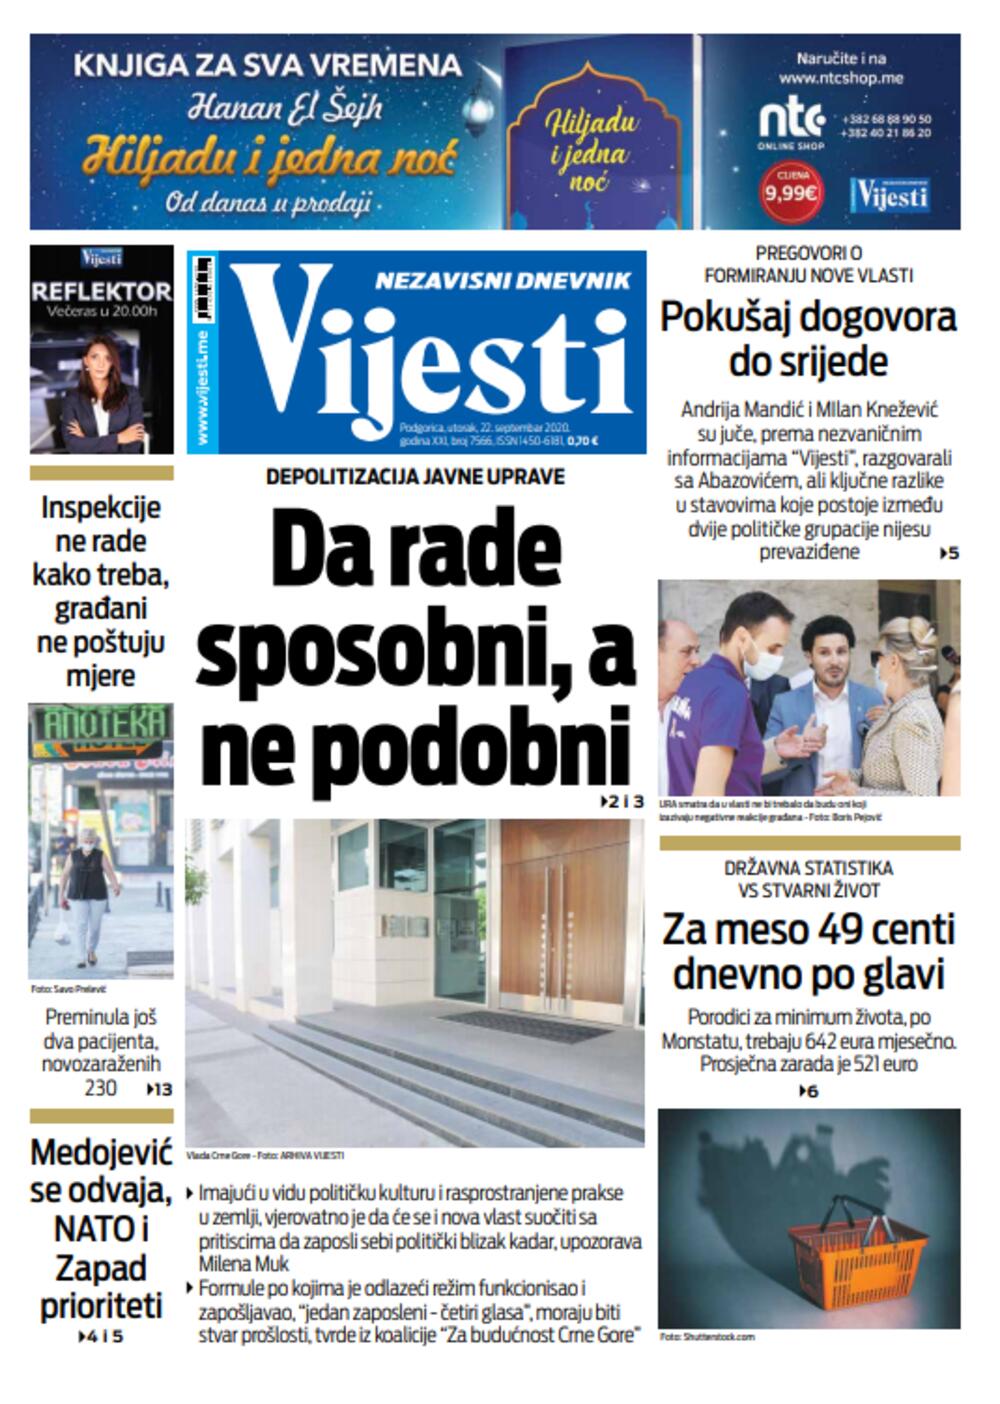 Naslovna strana "Vijesti" za 22. septembar, Foto: Vijesti